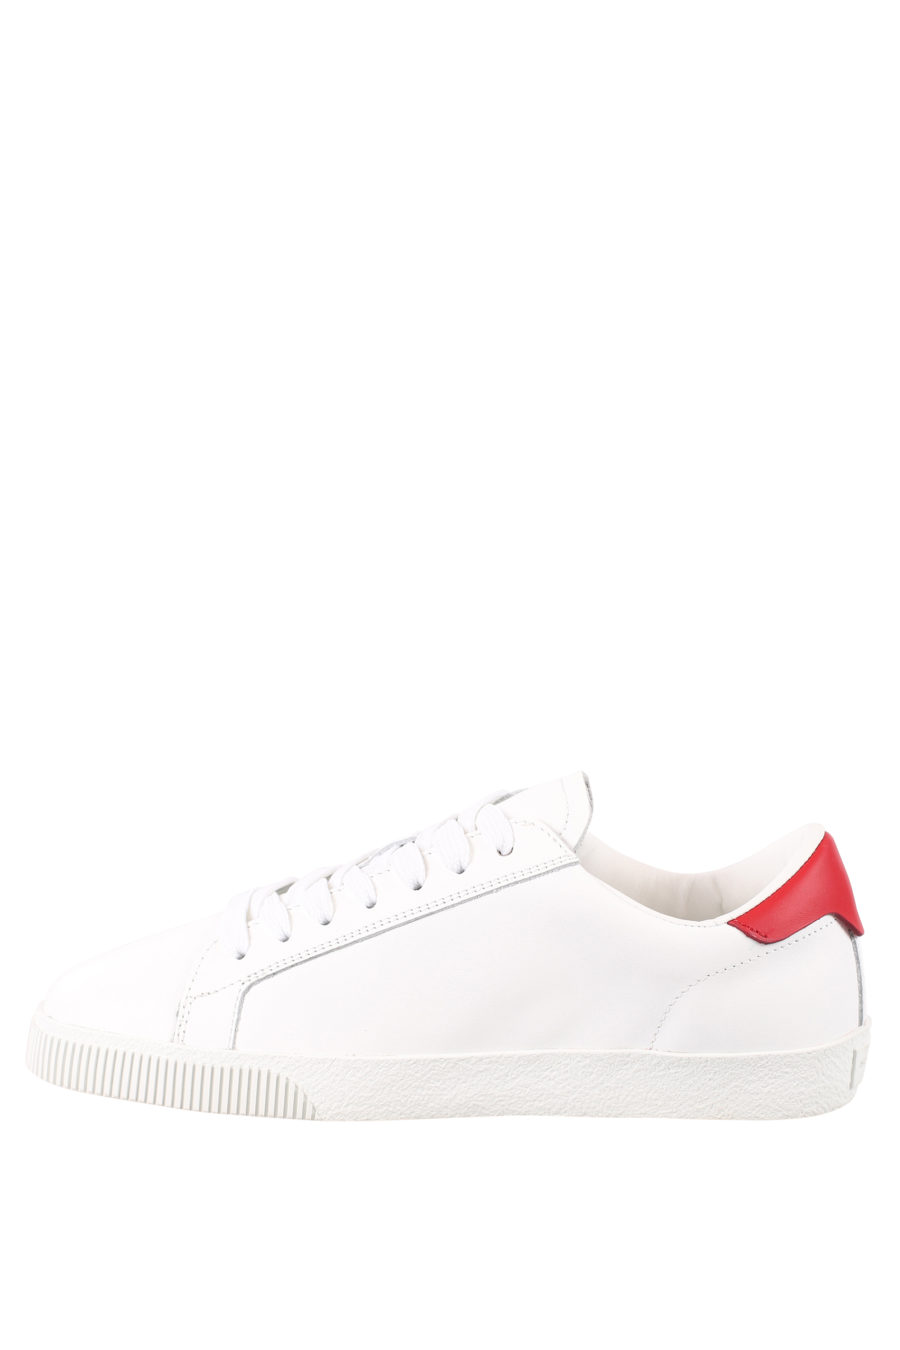 Zapatillas blancas con logo "icon splash" - IMG 0710